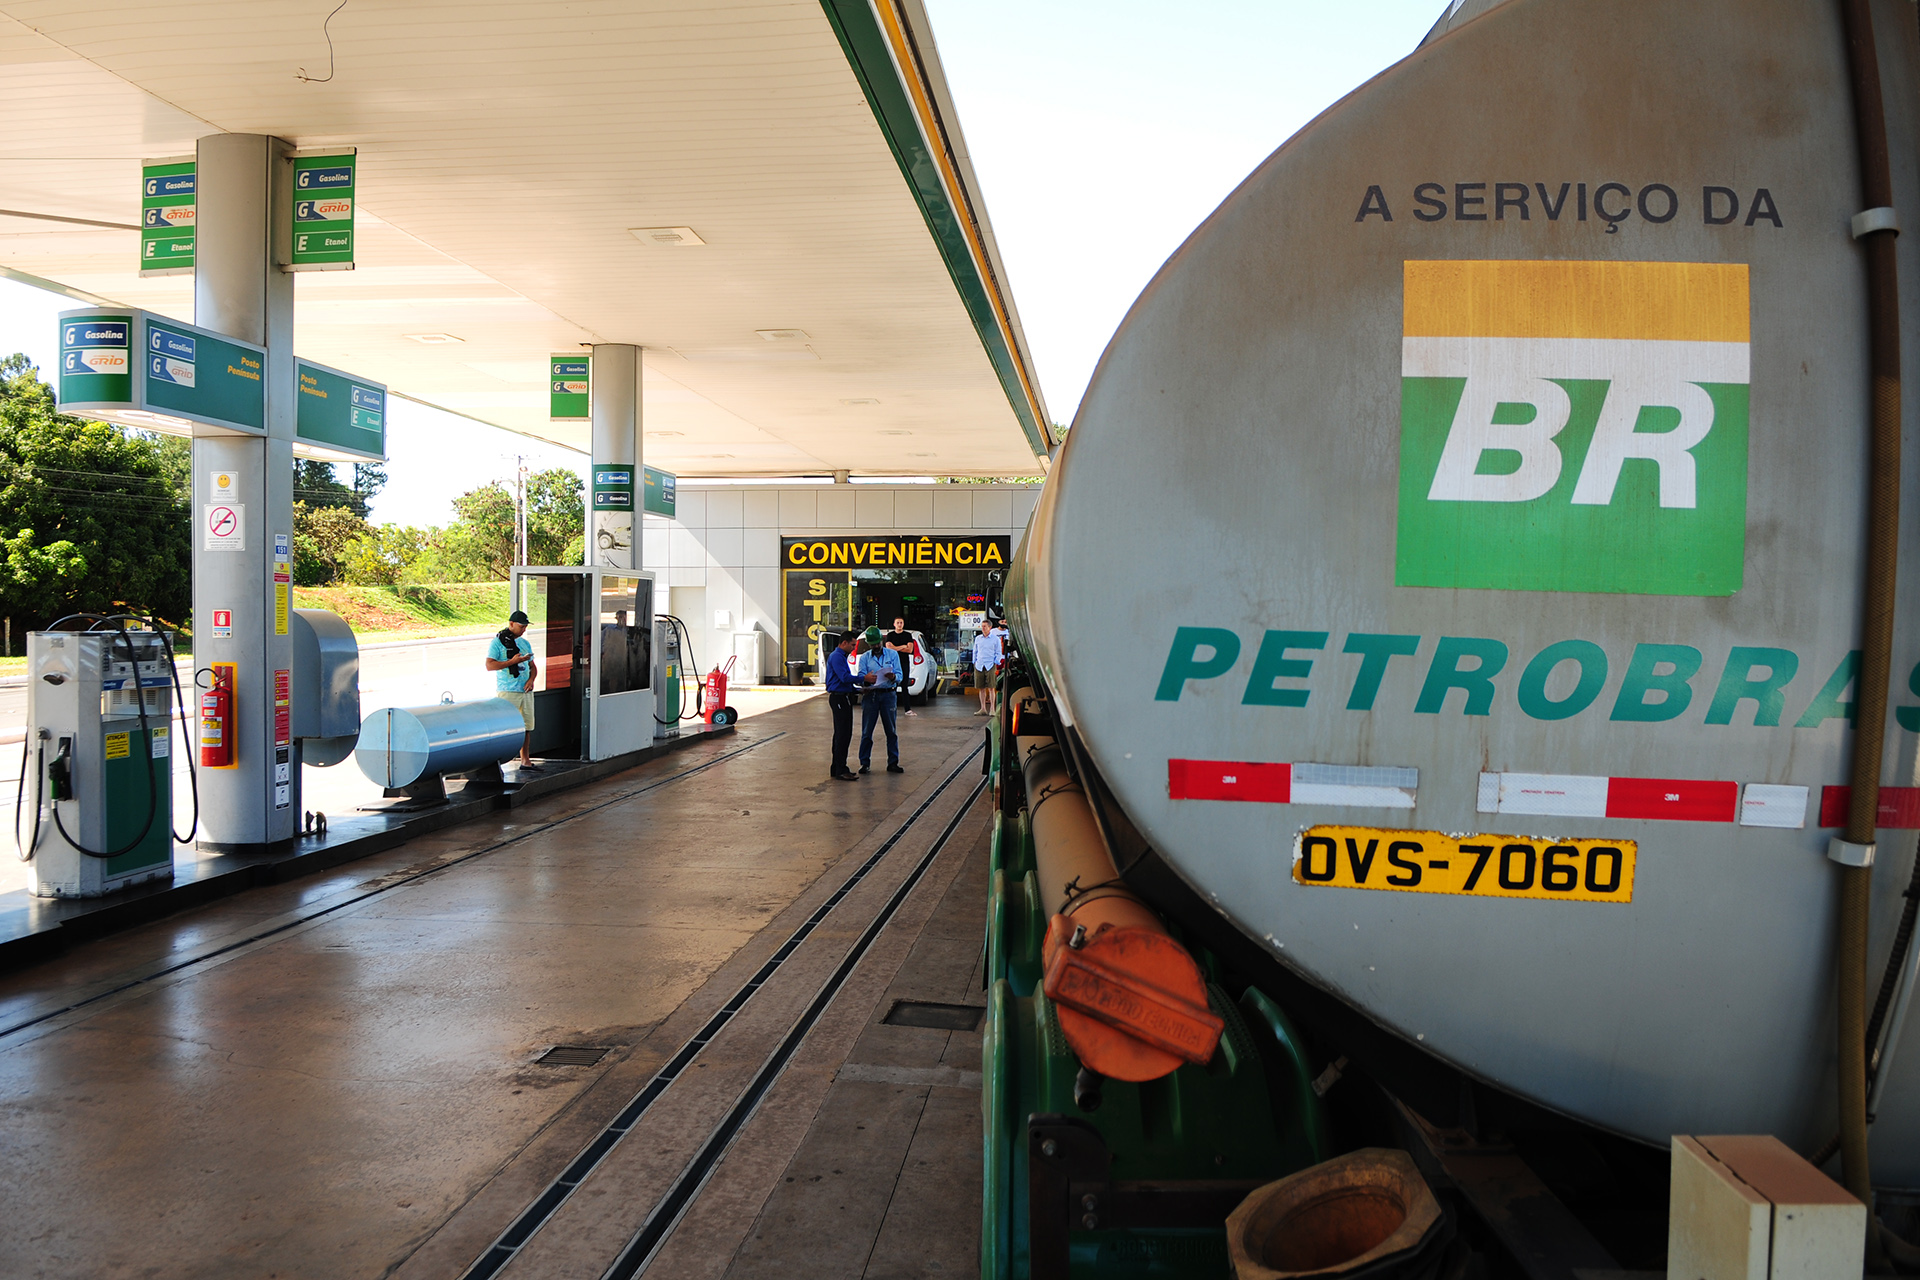 Os postos da cidade serão abastecidos com 160 caminhões de gasolina até as 18 horas desta quinta-feira (31). A expectativa é que a distribuição de combustível em Brasília comece a se normalizar a partir de hoje.